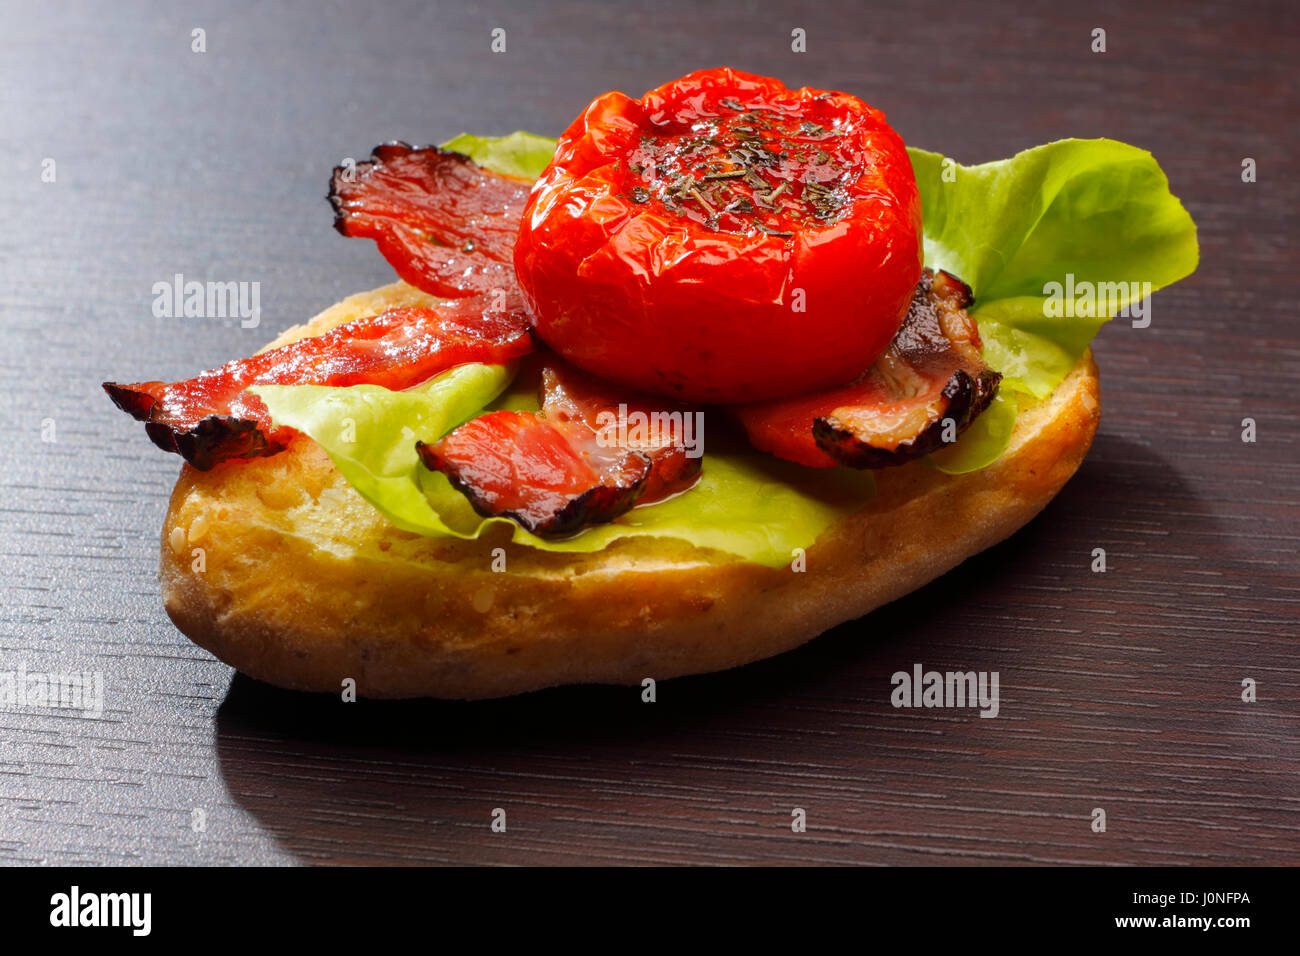 La metà di un pane con pancetta fritta, dimezzato pomodori e lattuga Foto Stock